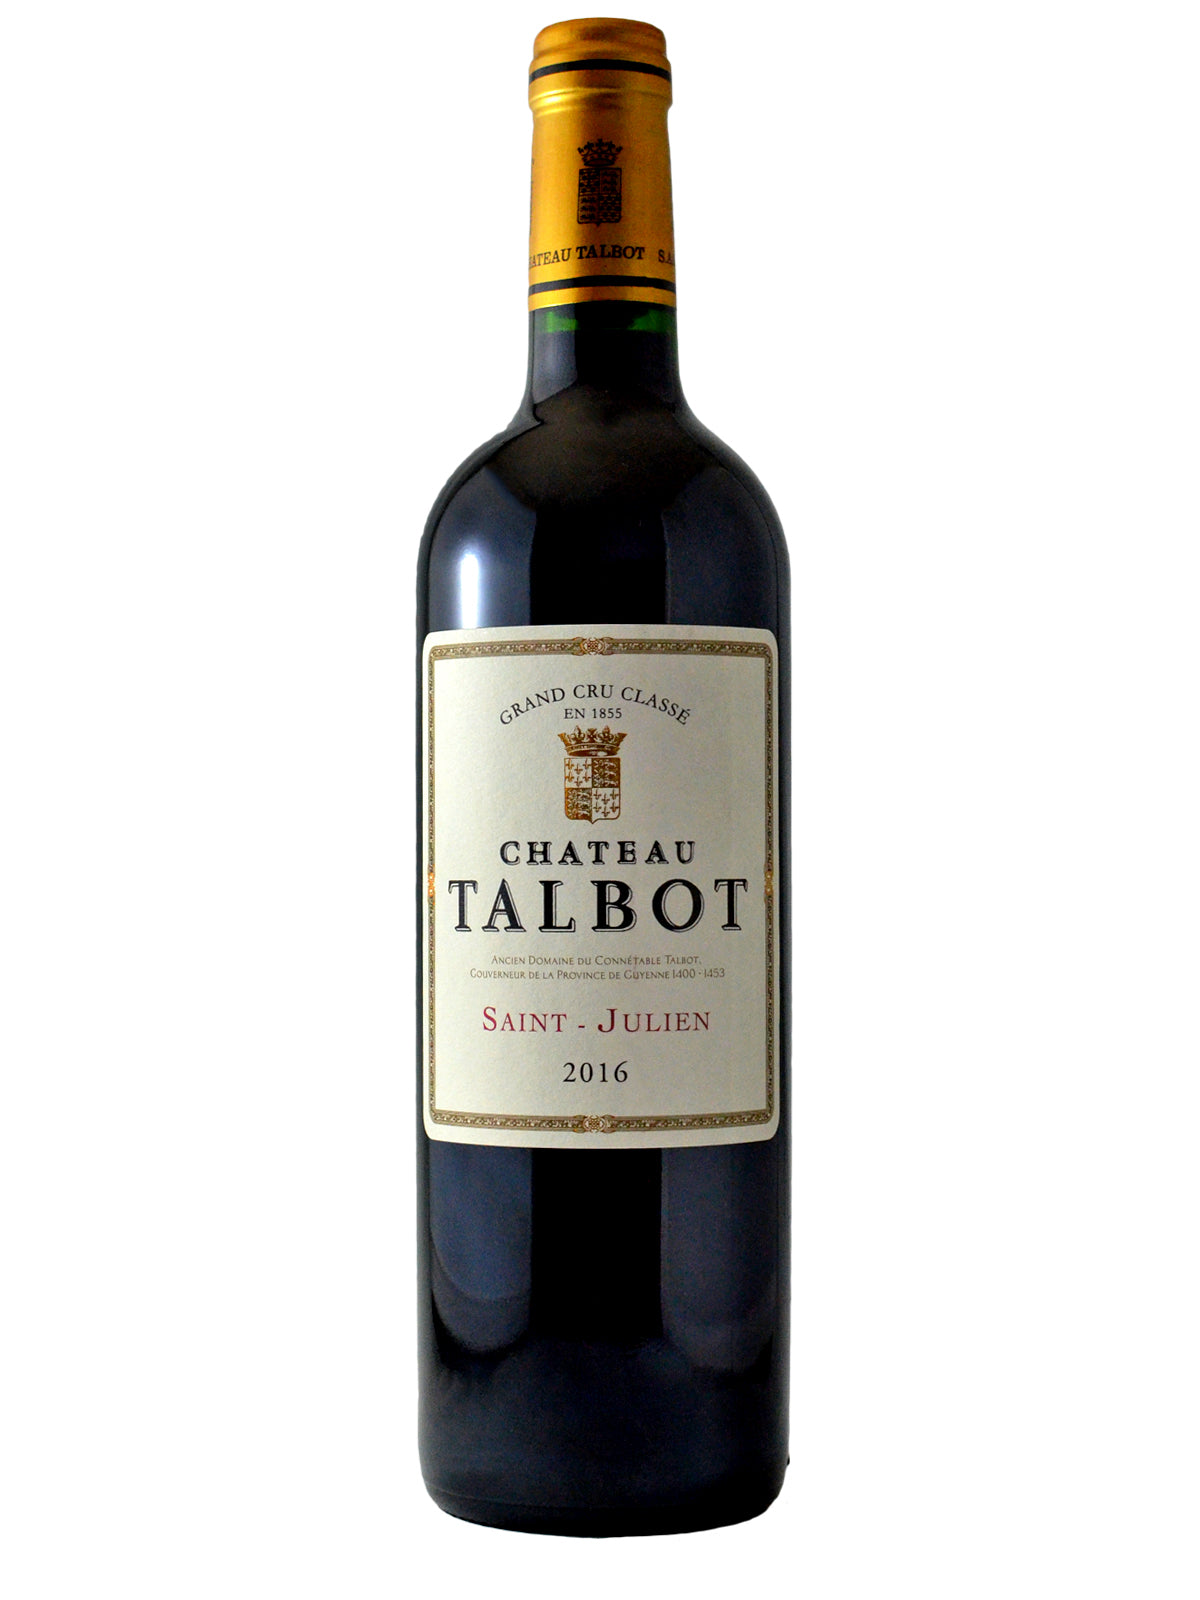 Château Talbot 2016 Saint-Julien